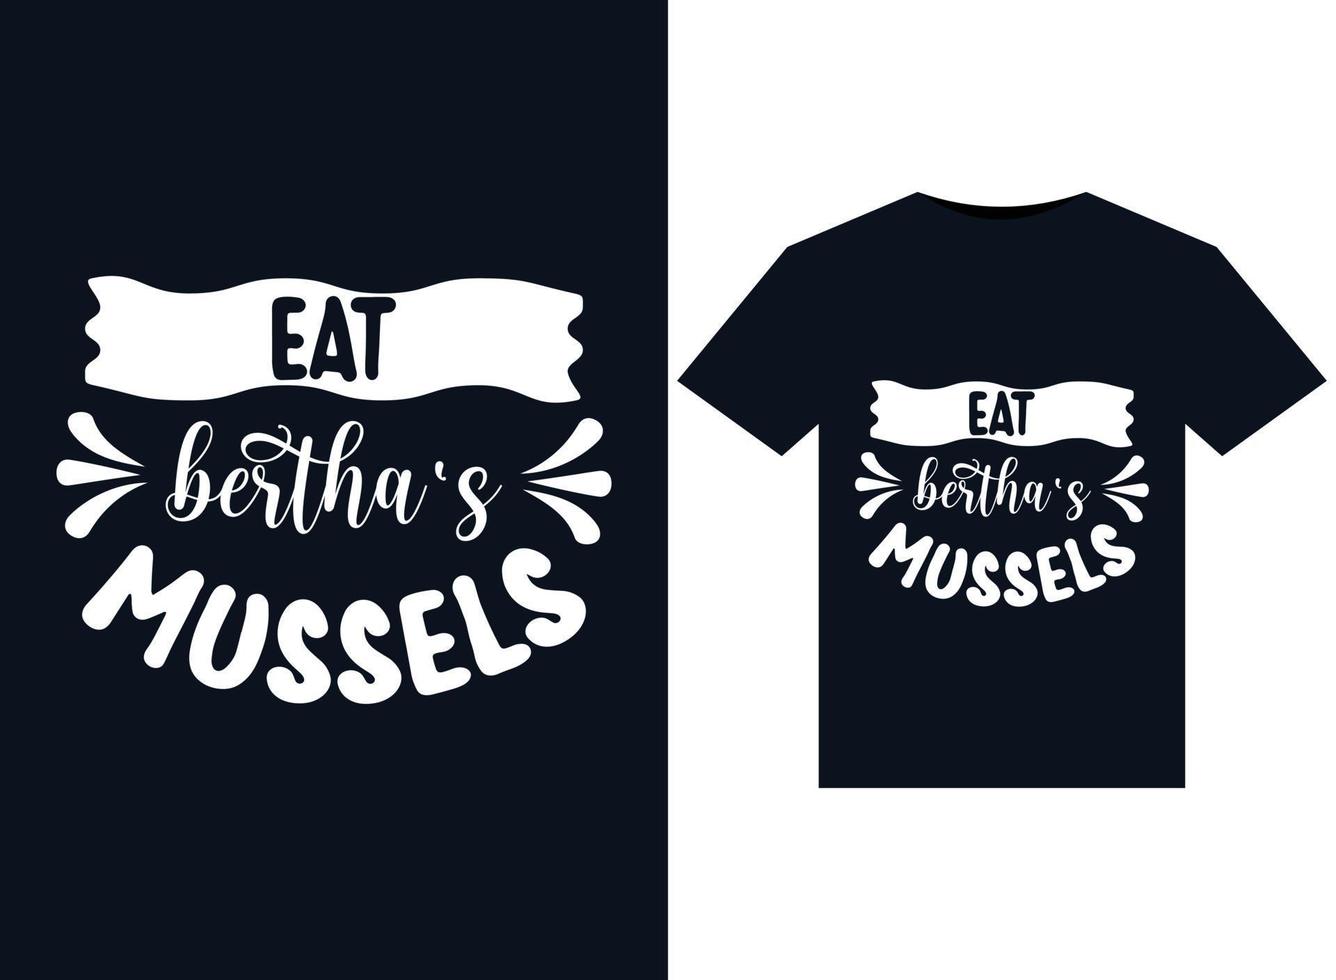 äta berthas musslor illustrationer för tryckfärdig t-tröjor design vektor